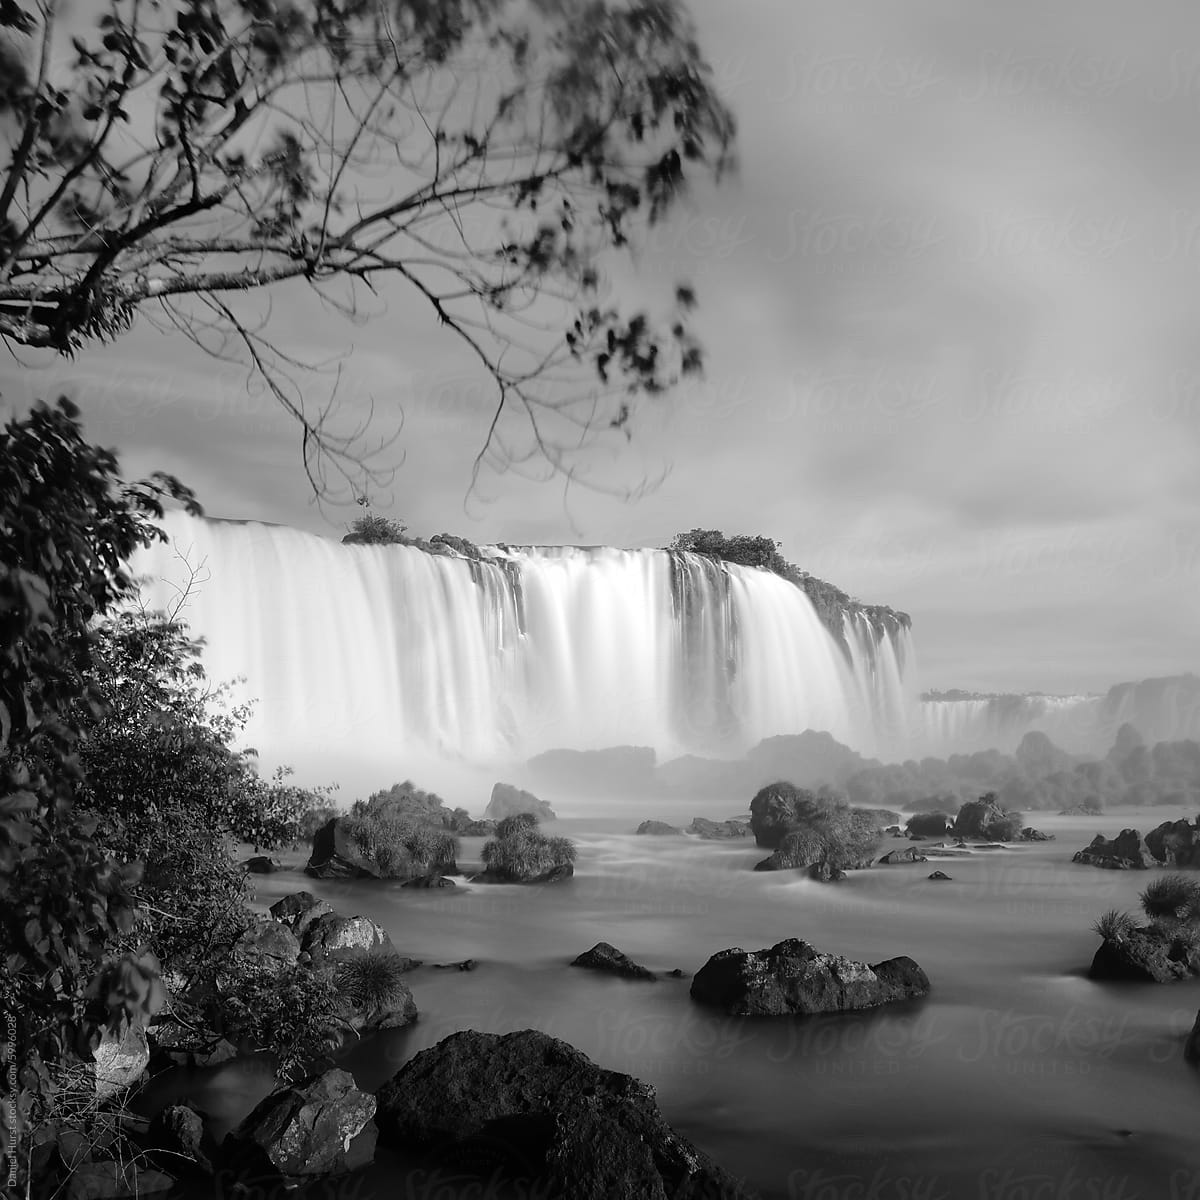 Iguazu Falls National Park in Brazil